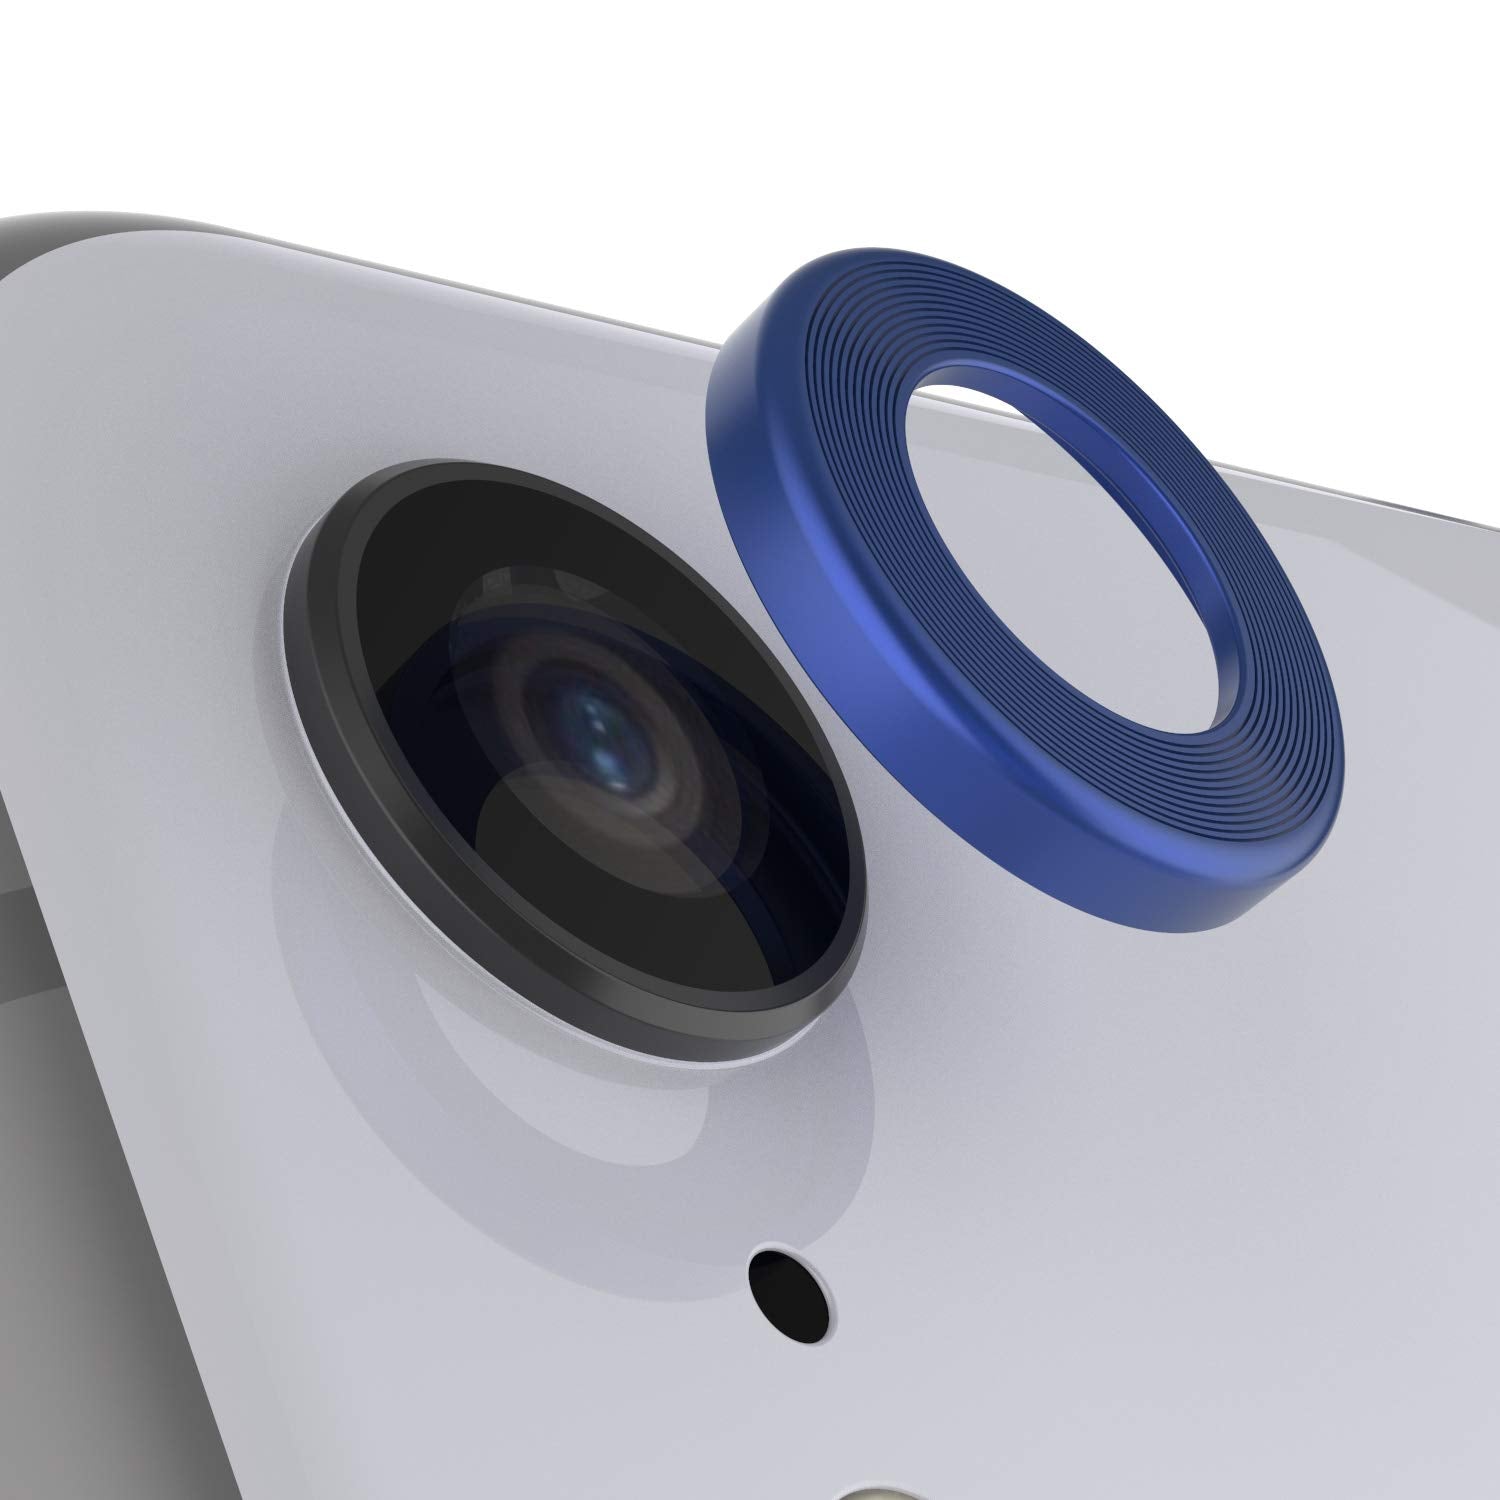 Camera Ring] Samsung Galaxy S23 Ultra Camera Protector Ring Type